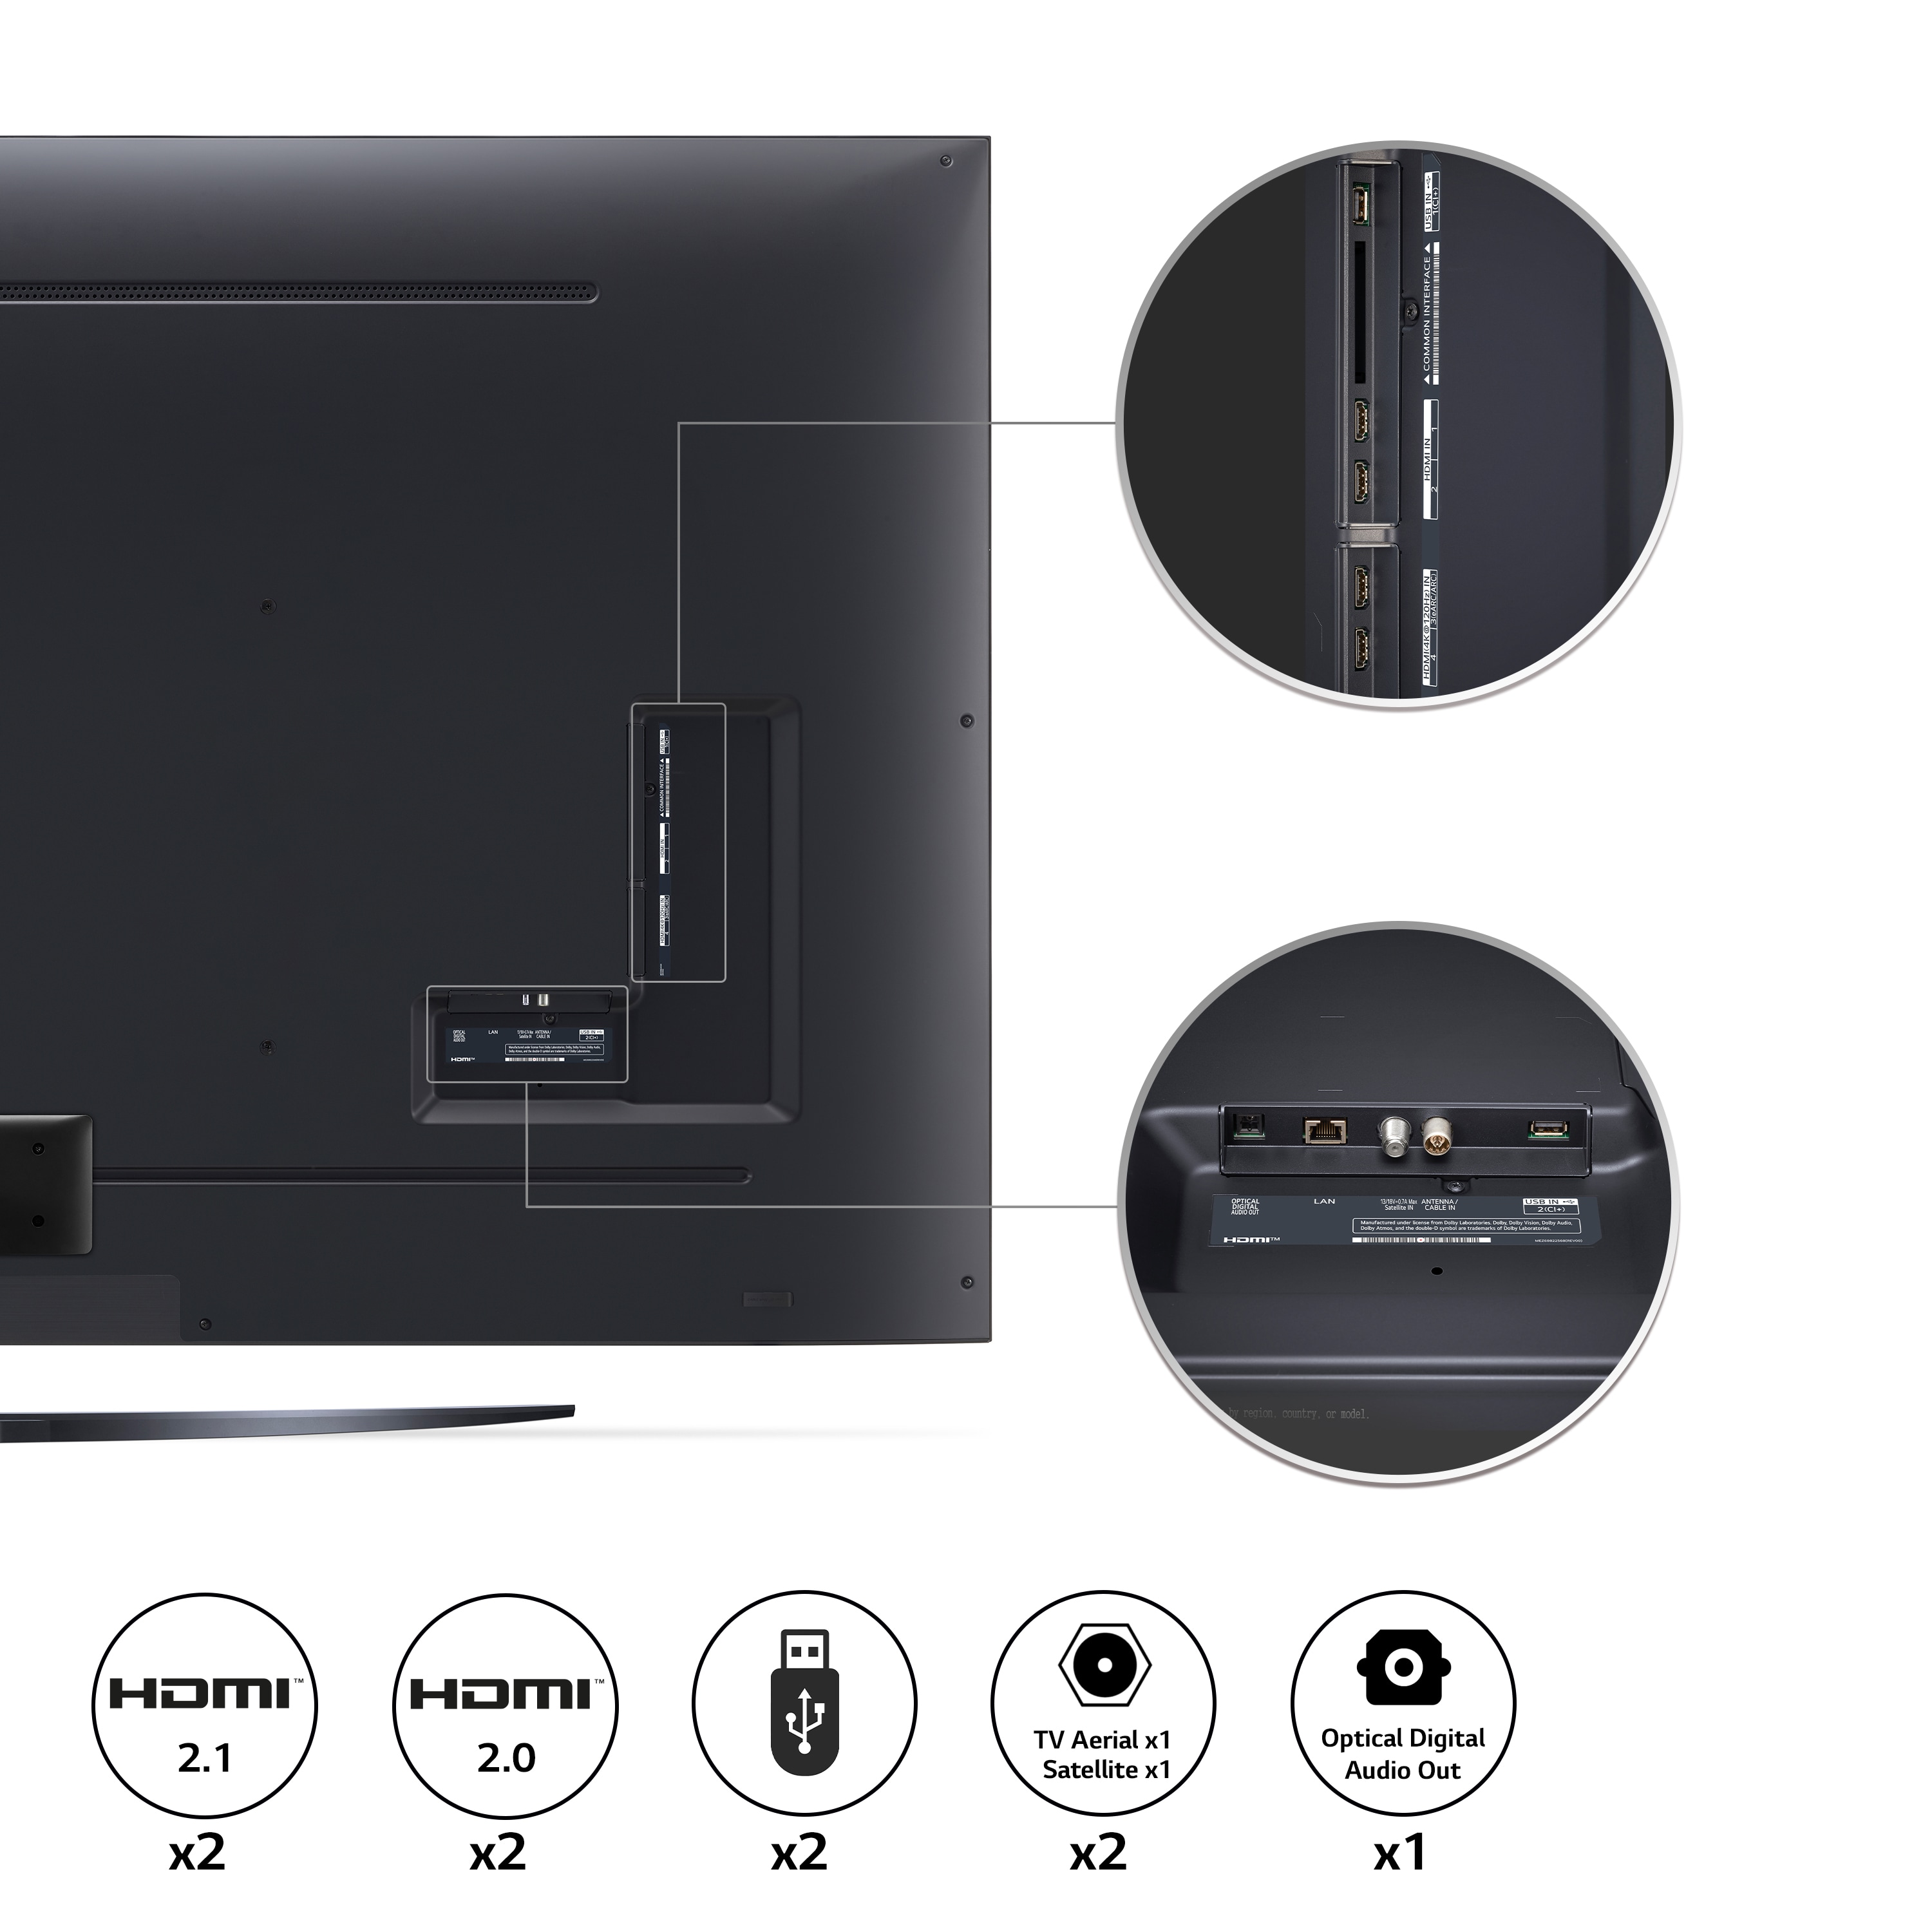 LG NanoCell NANO76 86 inch TV 2022, 86NANO766QA